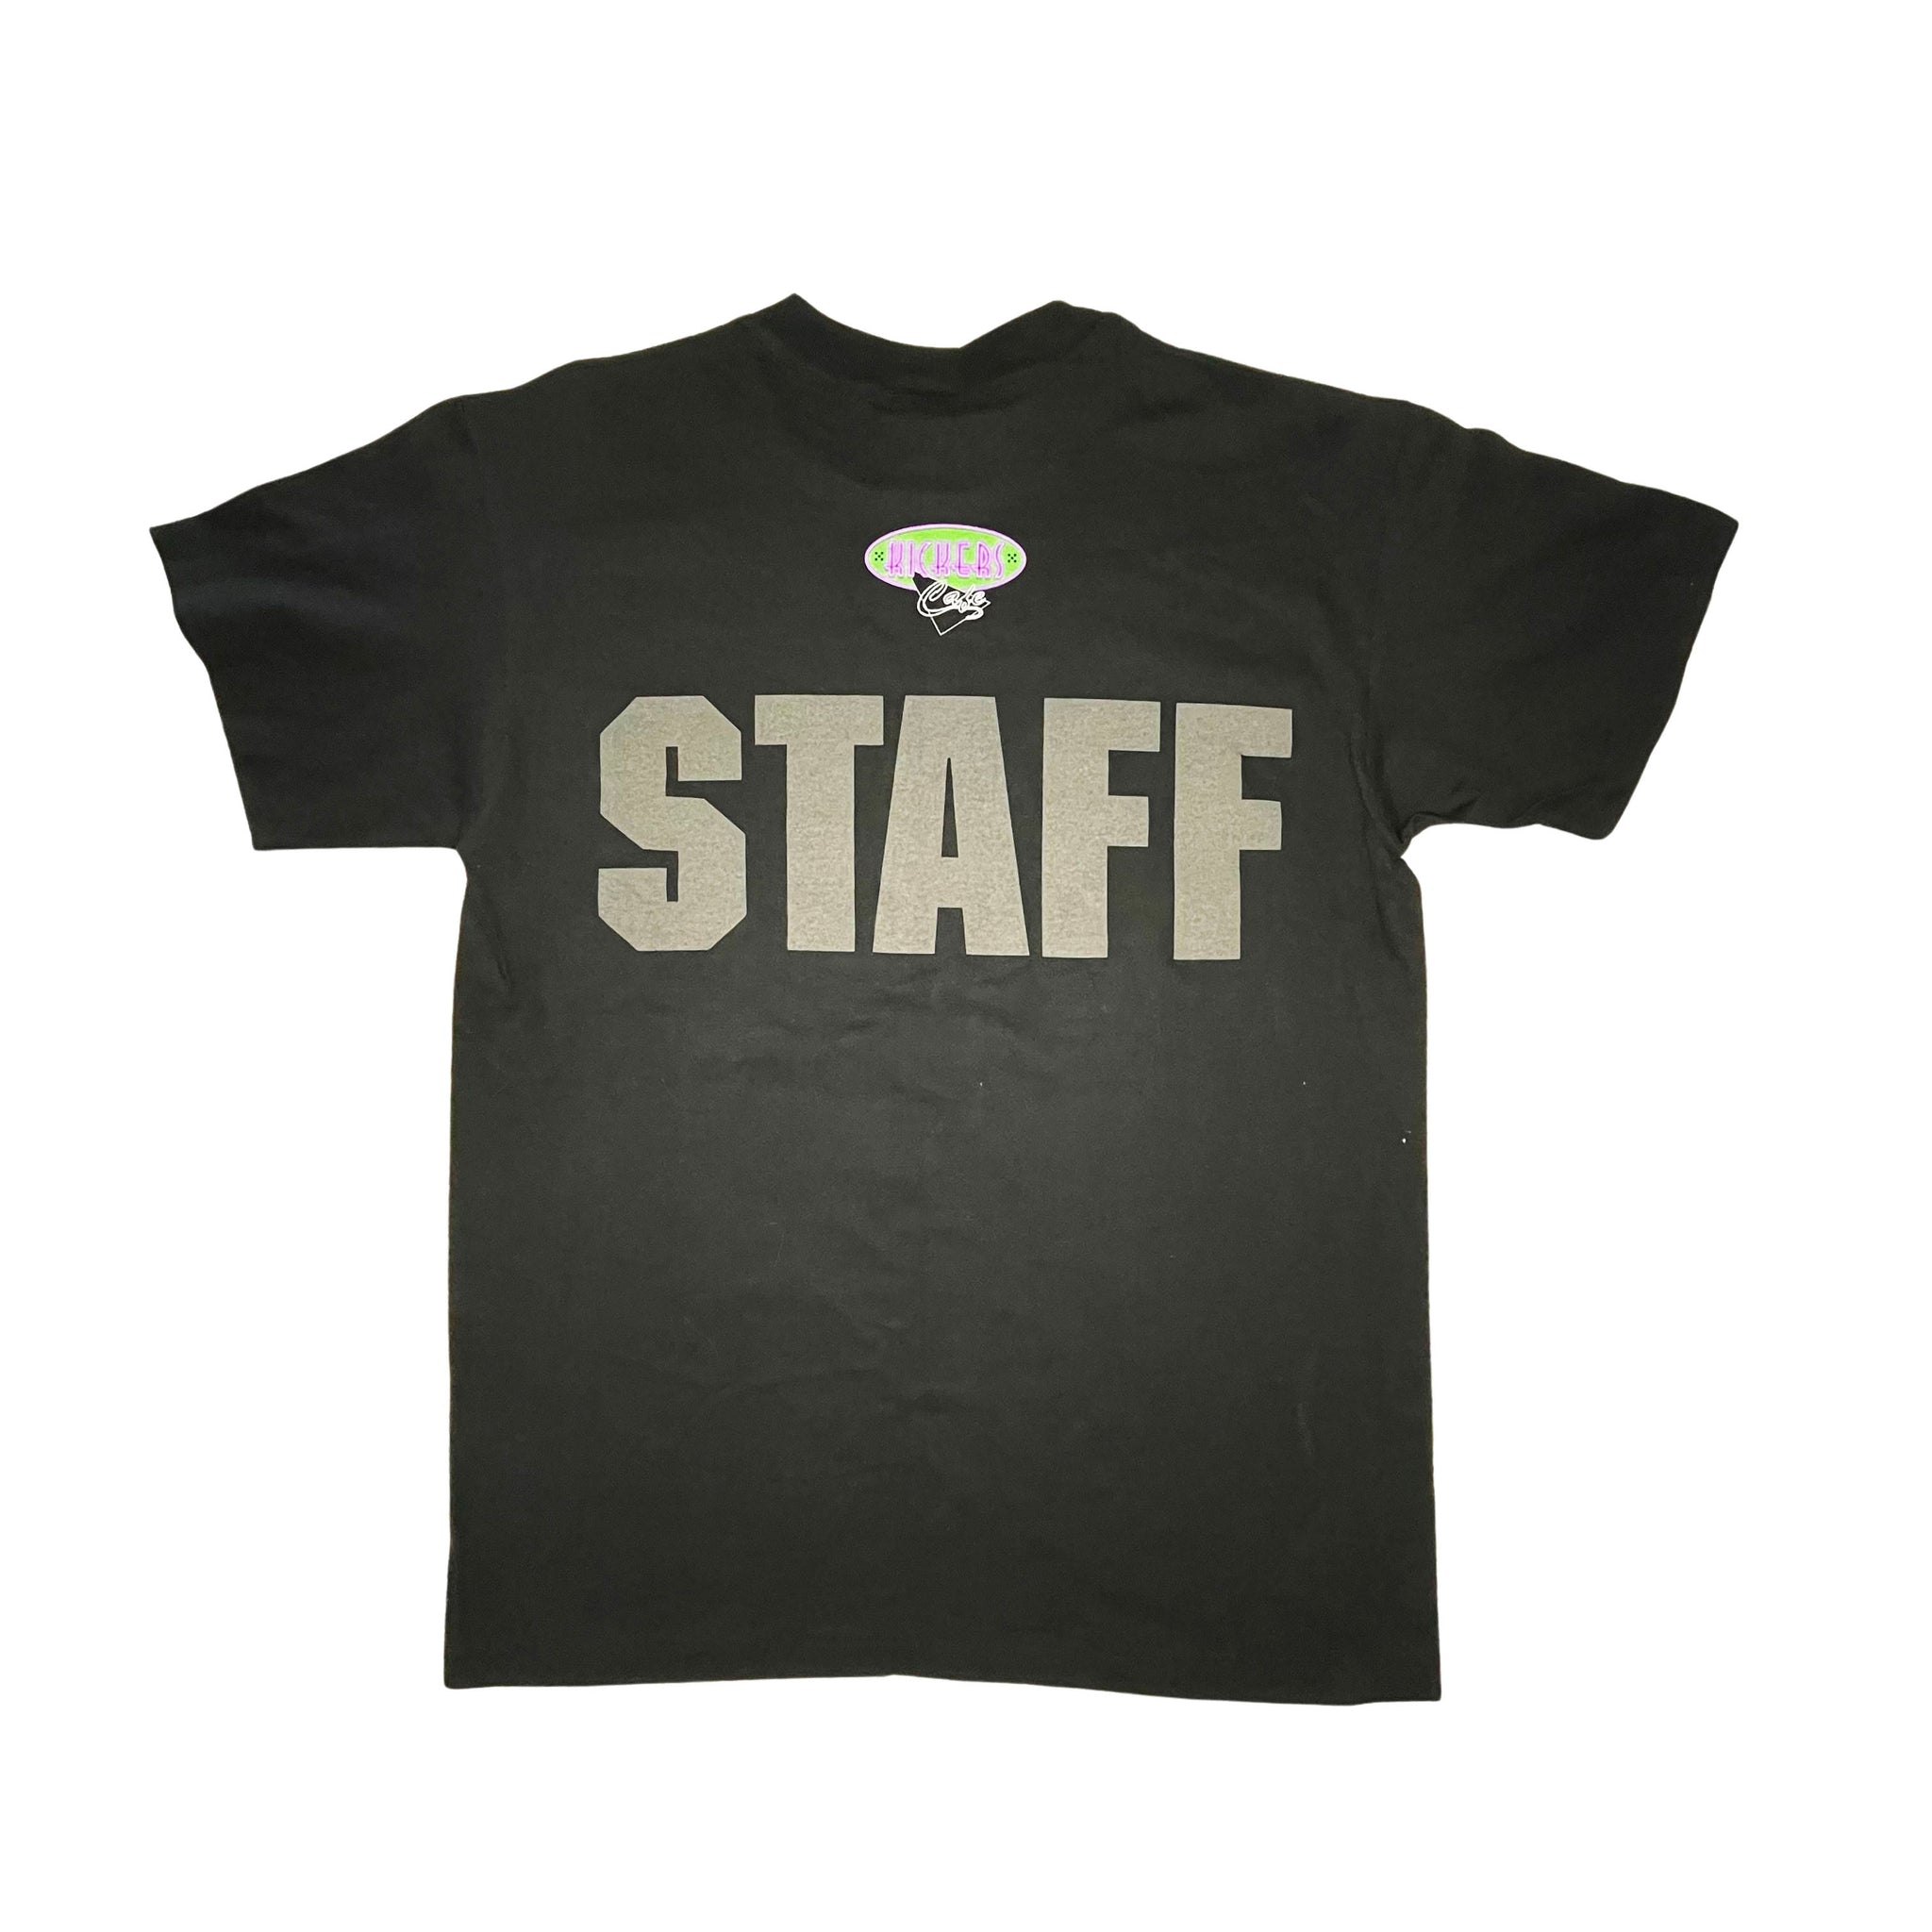 CYRK Kickers Cafe STAFF T-Shirt - M/L